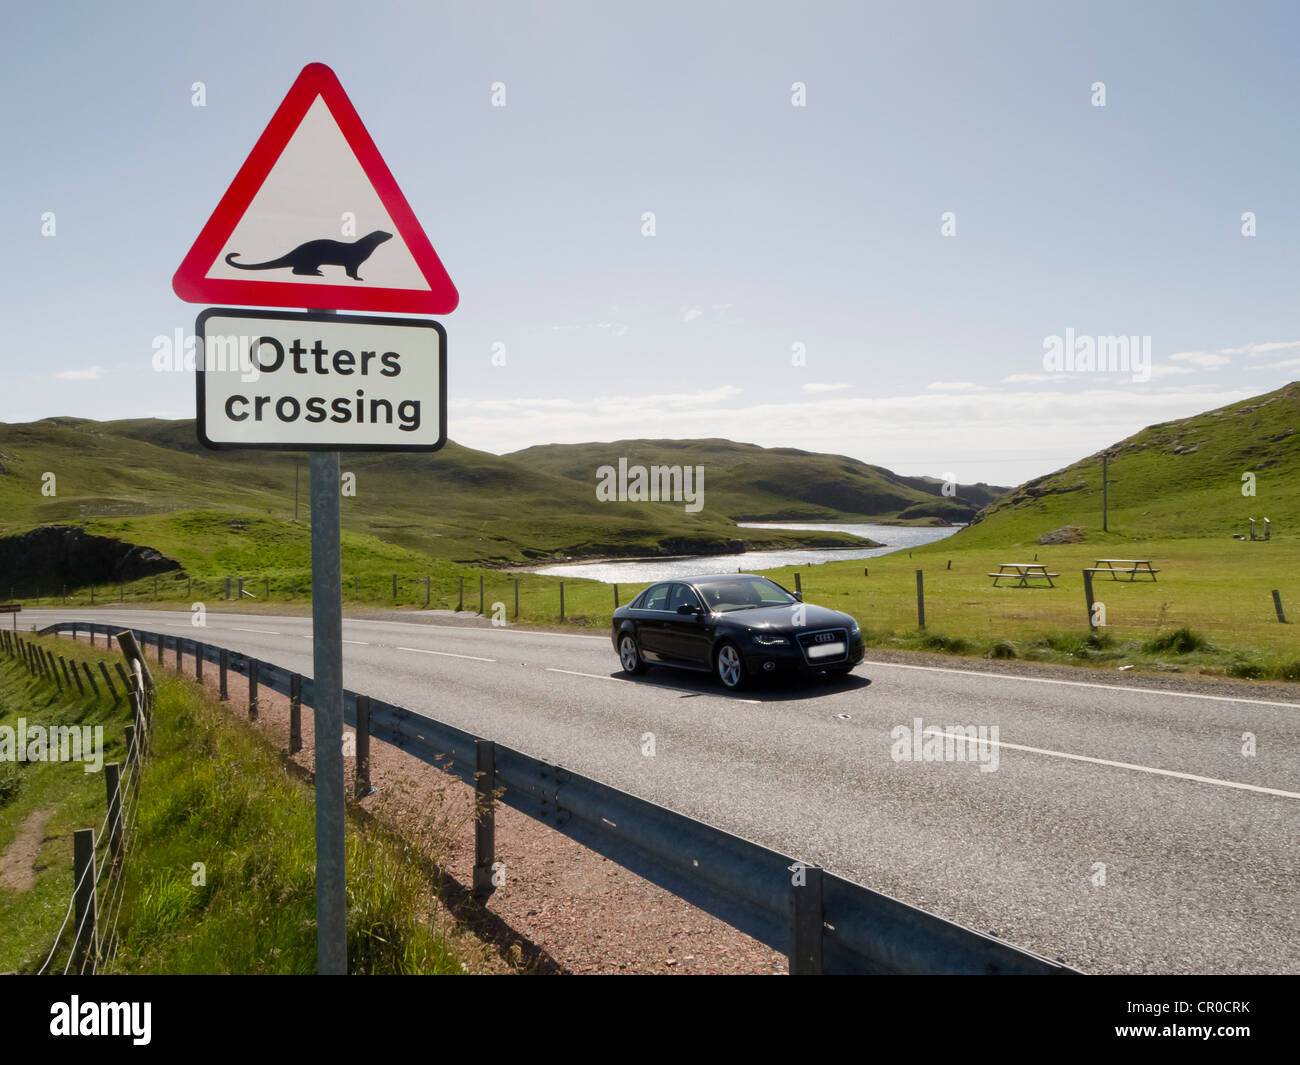 'Passage' loutres route avertissement signe à Mavis Grind, îles Shetland. Juin 2010. Banque D'Images